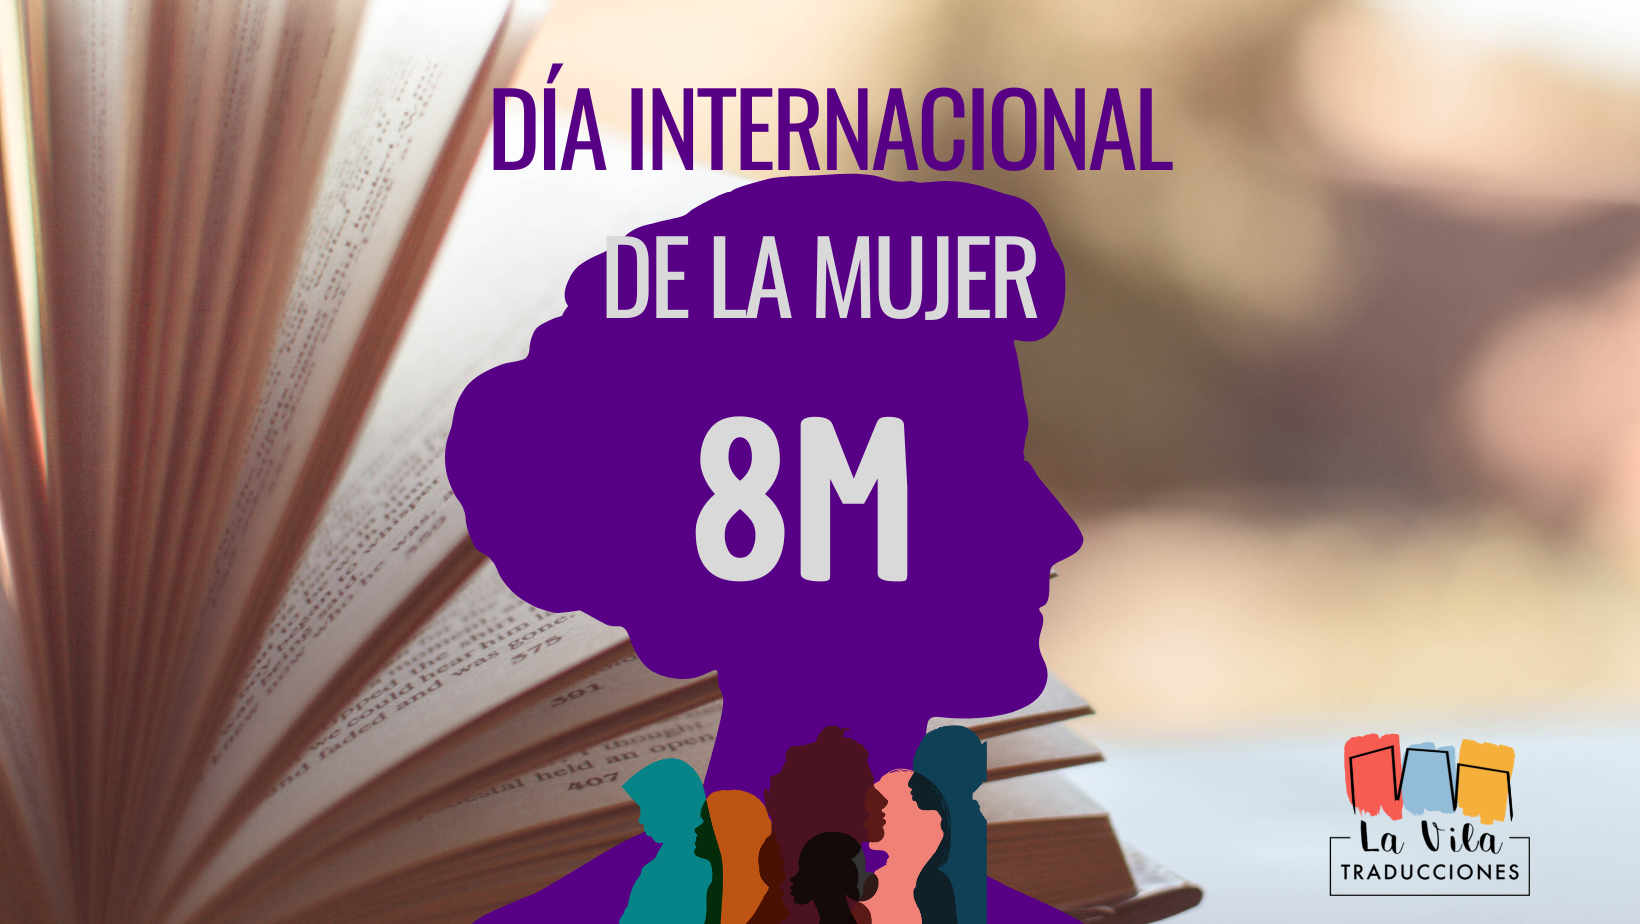 La Mujer Traductora. 8M. día internacional de la mujer. Poster sobre el día de la mujer trabajadora traductora